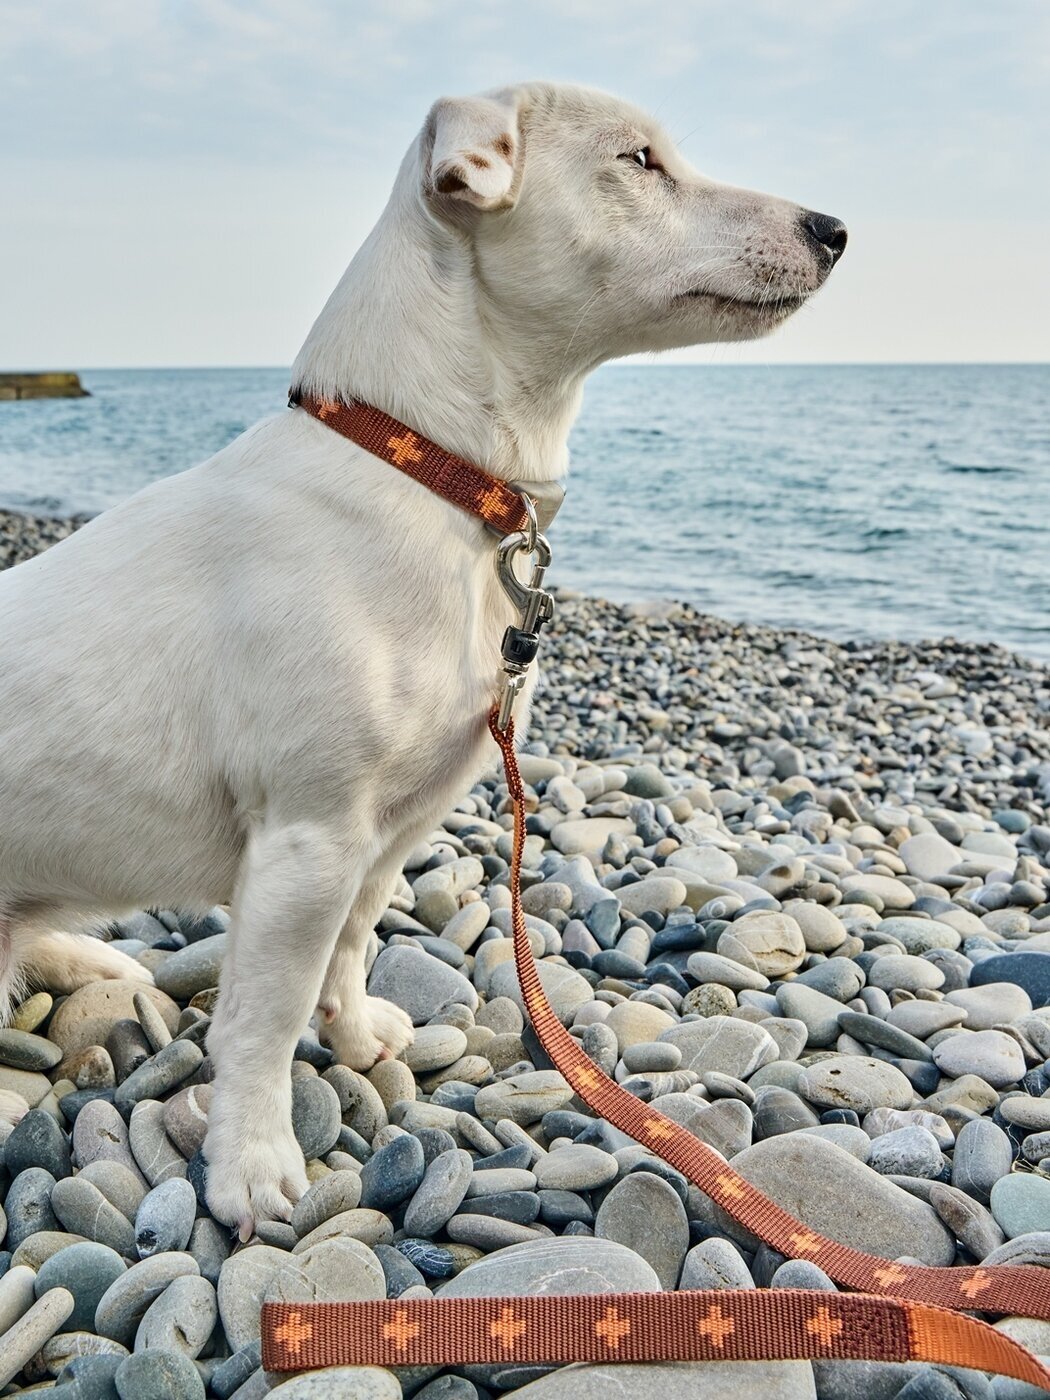 Ошейник для собак Japan Premium Pet из прочного нейлона с силиконовой защитой, цвет коричневый, размер M.